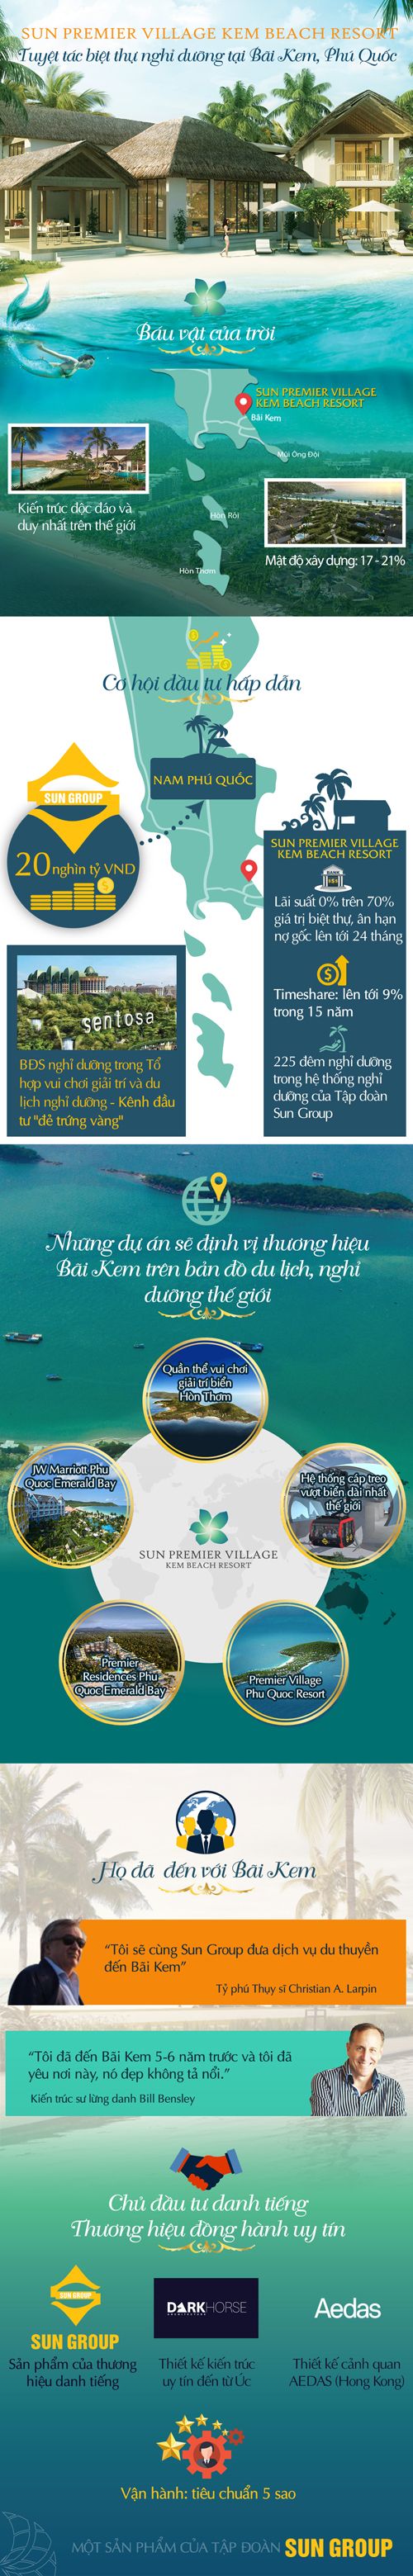 Vì sao Sun Premier Village Kem Beach Resort ngày càng hút giới đầu tư? - Ảnh 2